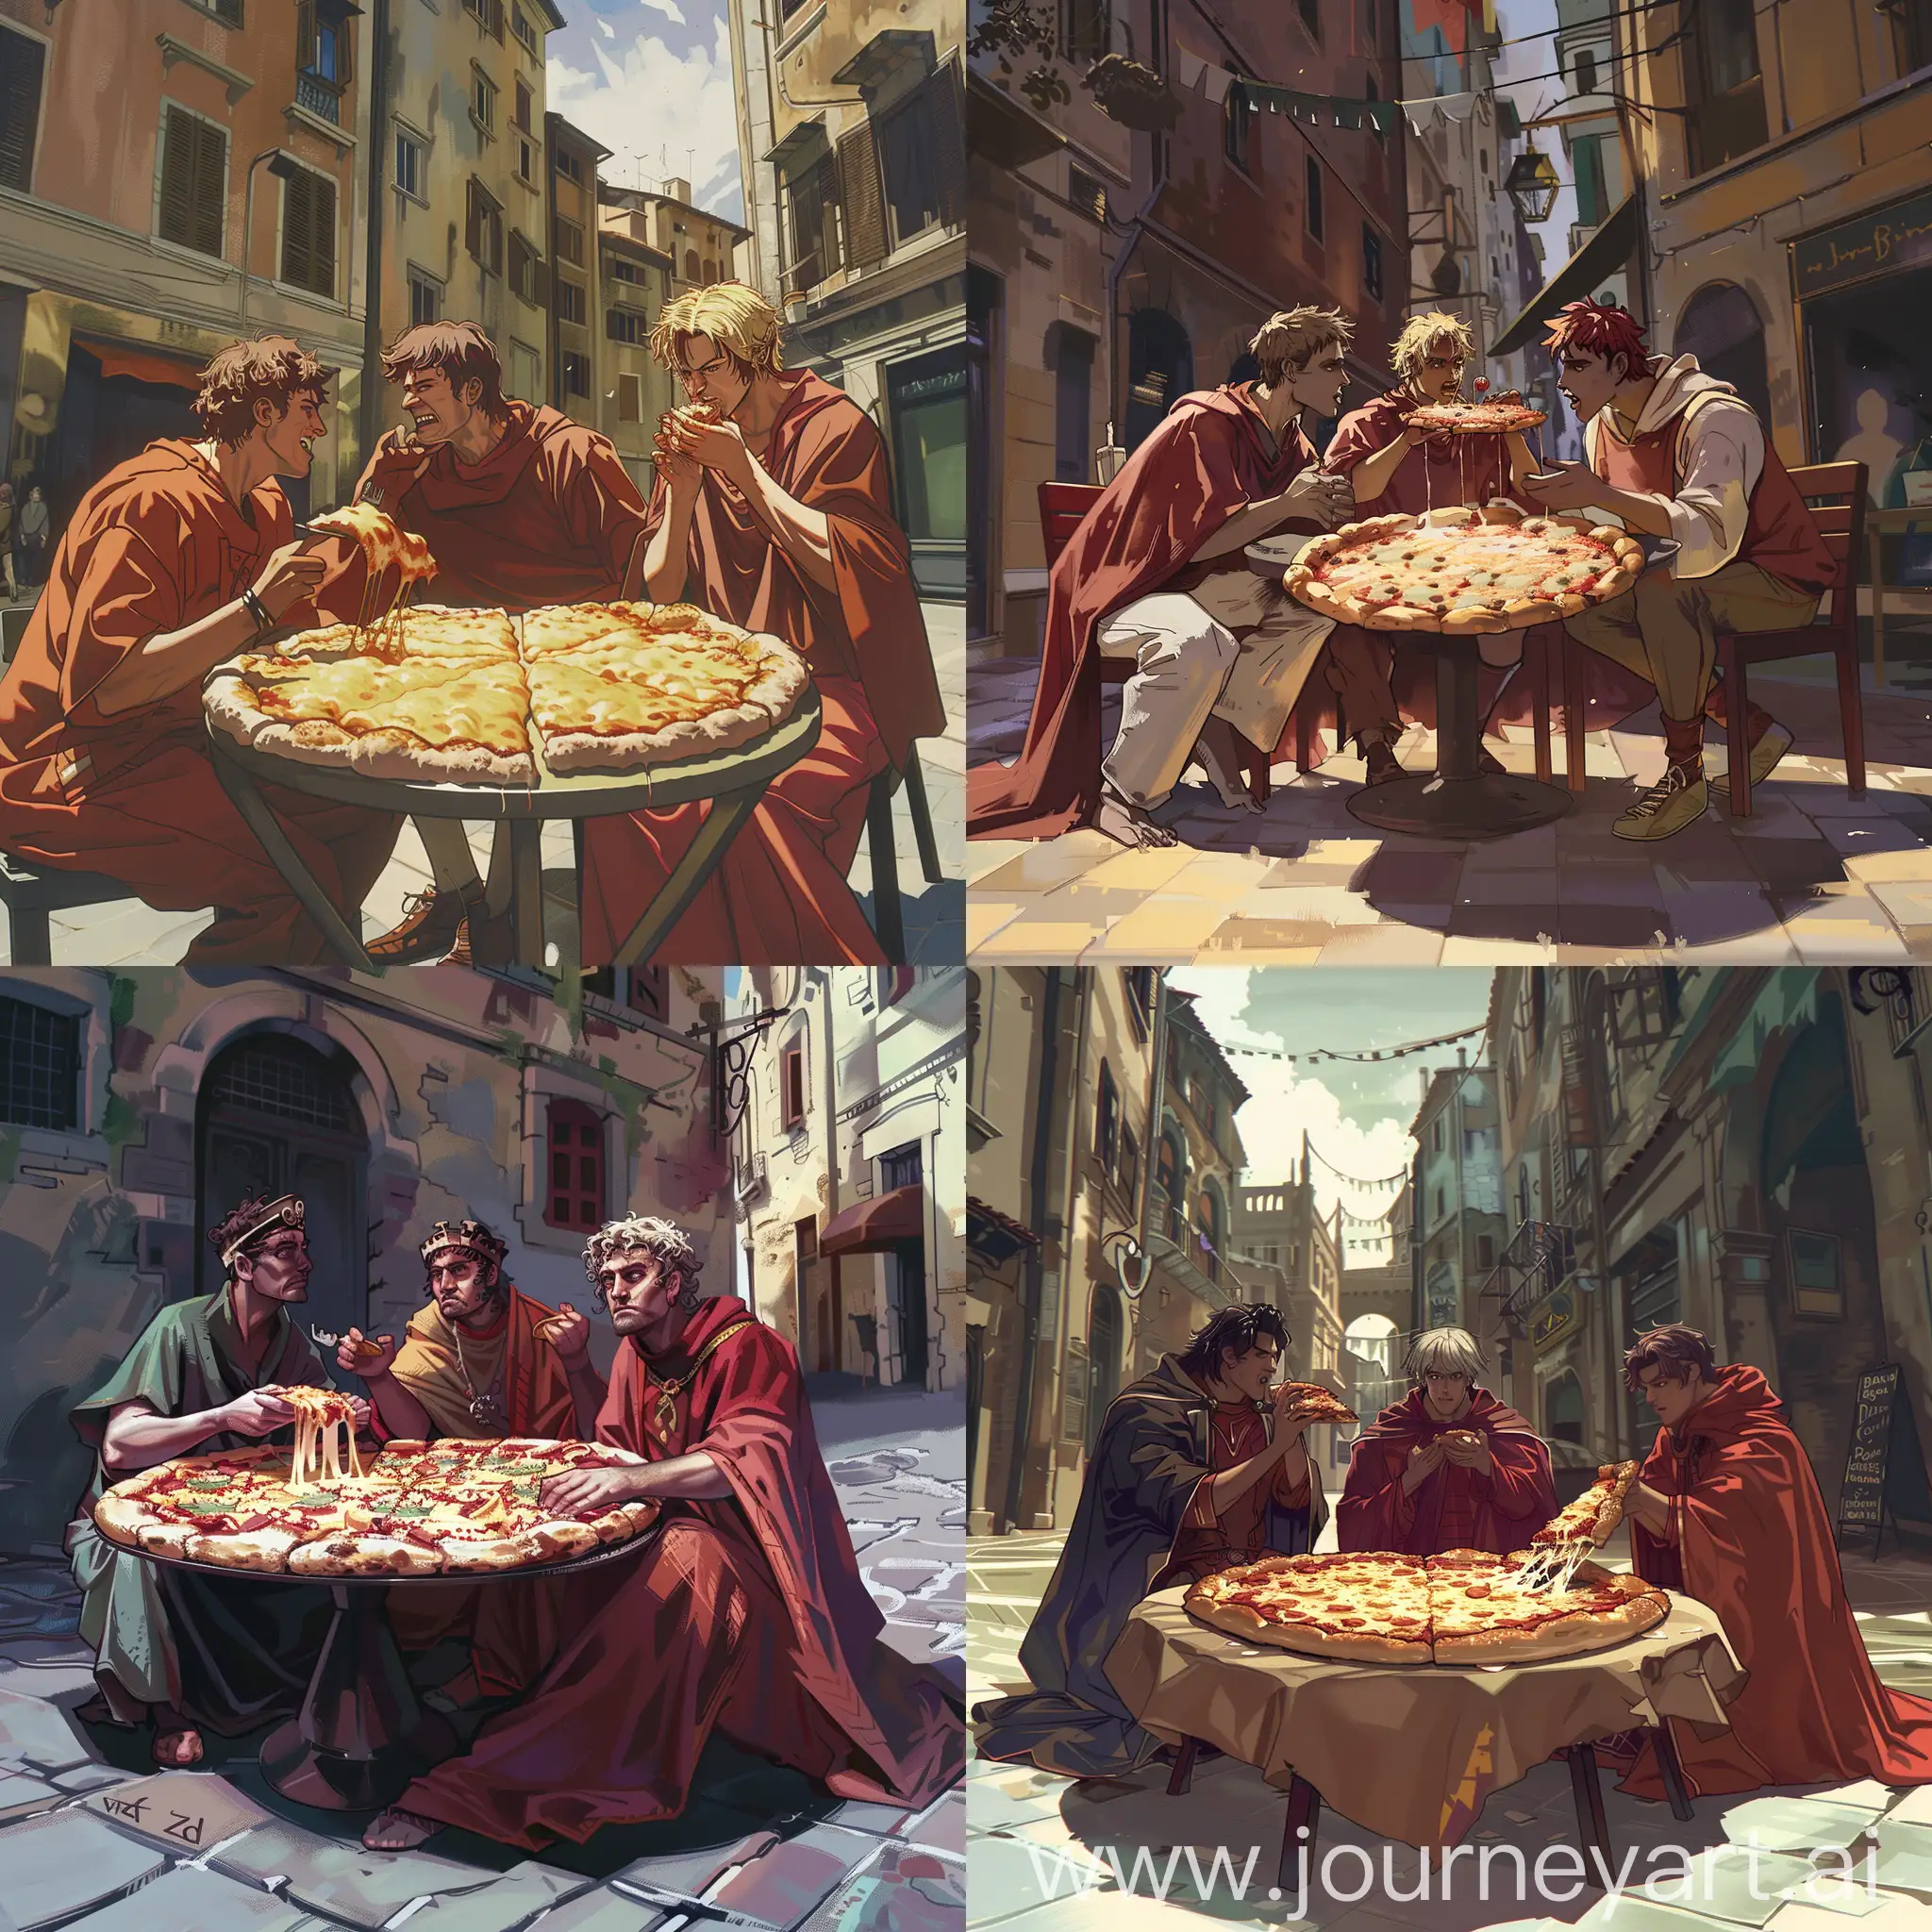 сгенерируй картинку, где Данте, Вергилий и Неро сидят на улице у ресторана за столом и едят большую пиццу с сыром